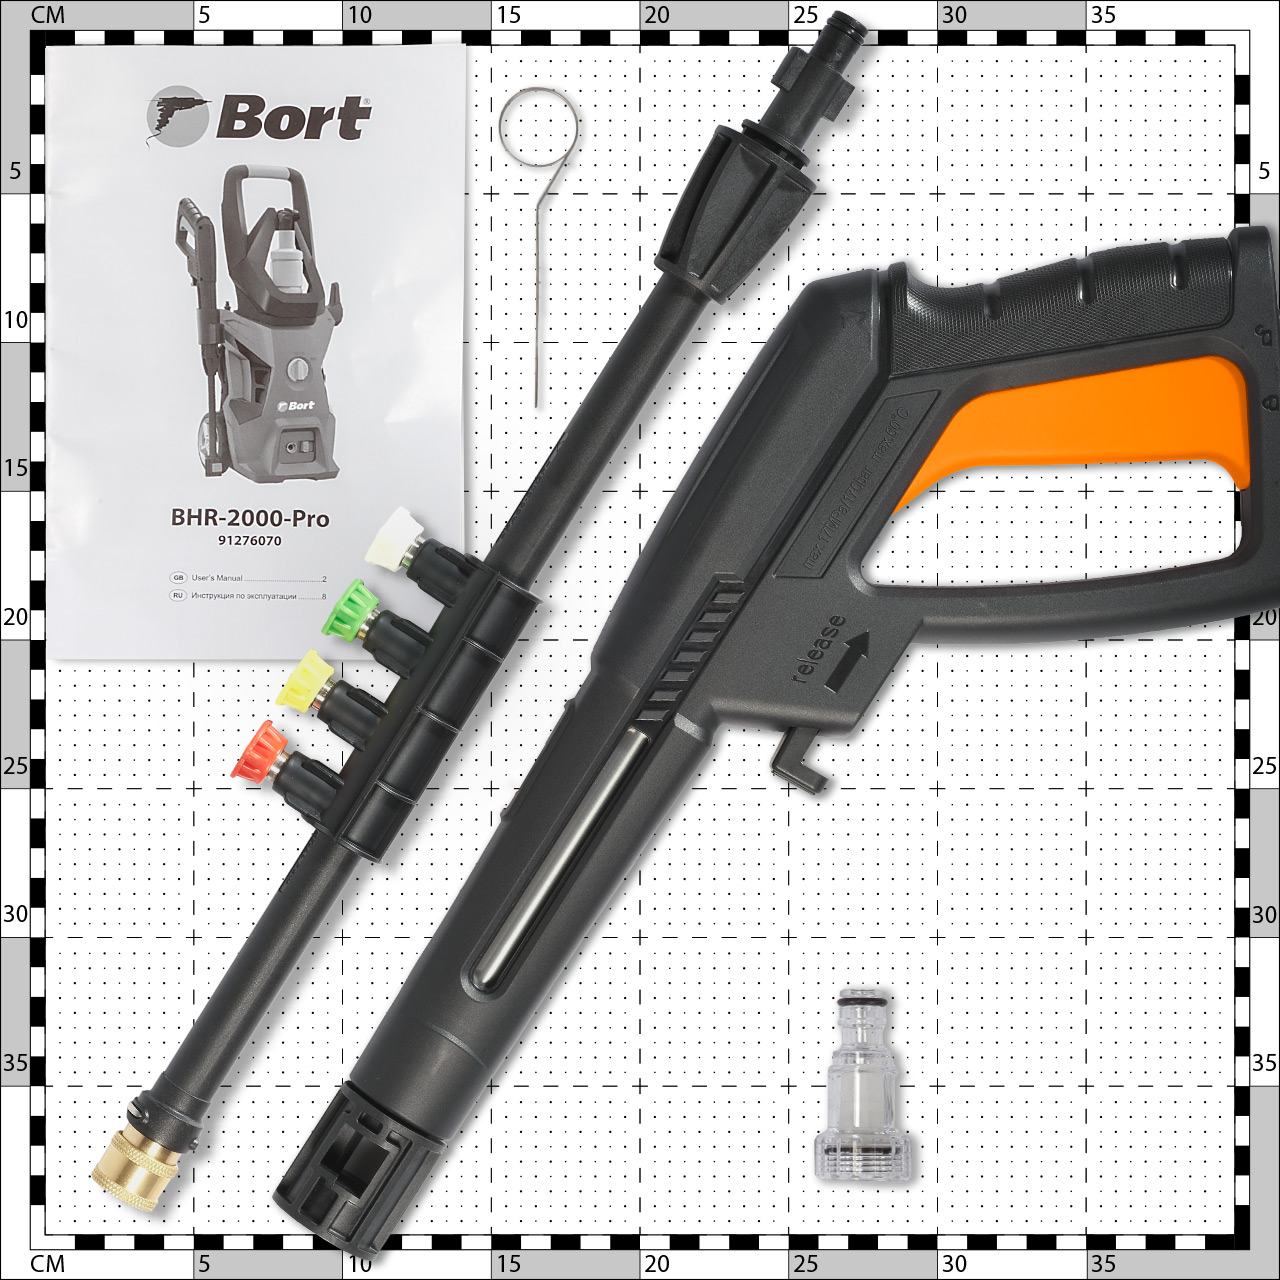    Bort BHR-2000-Pro (91276070)